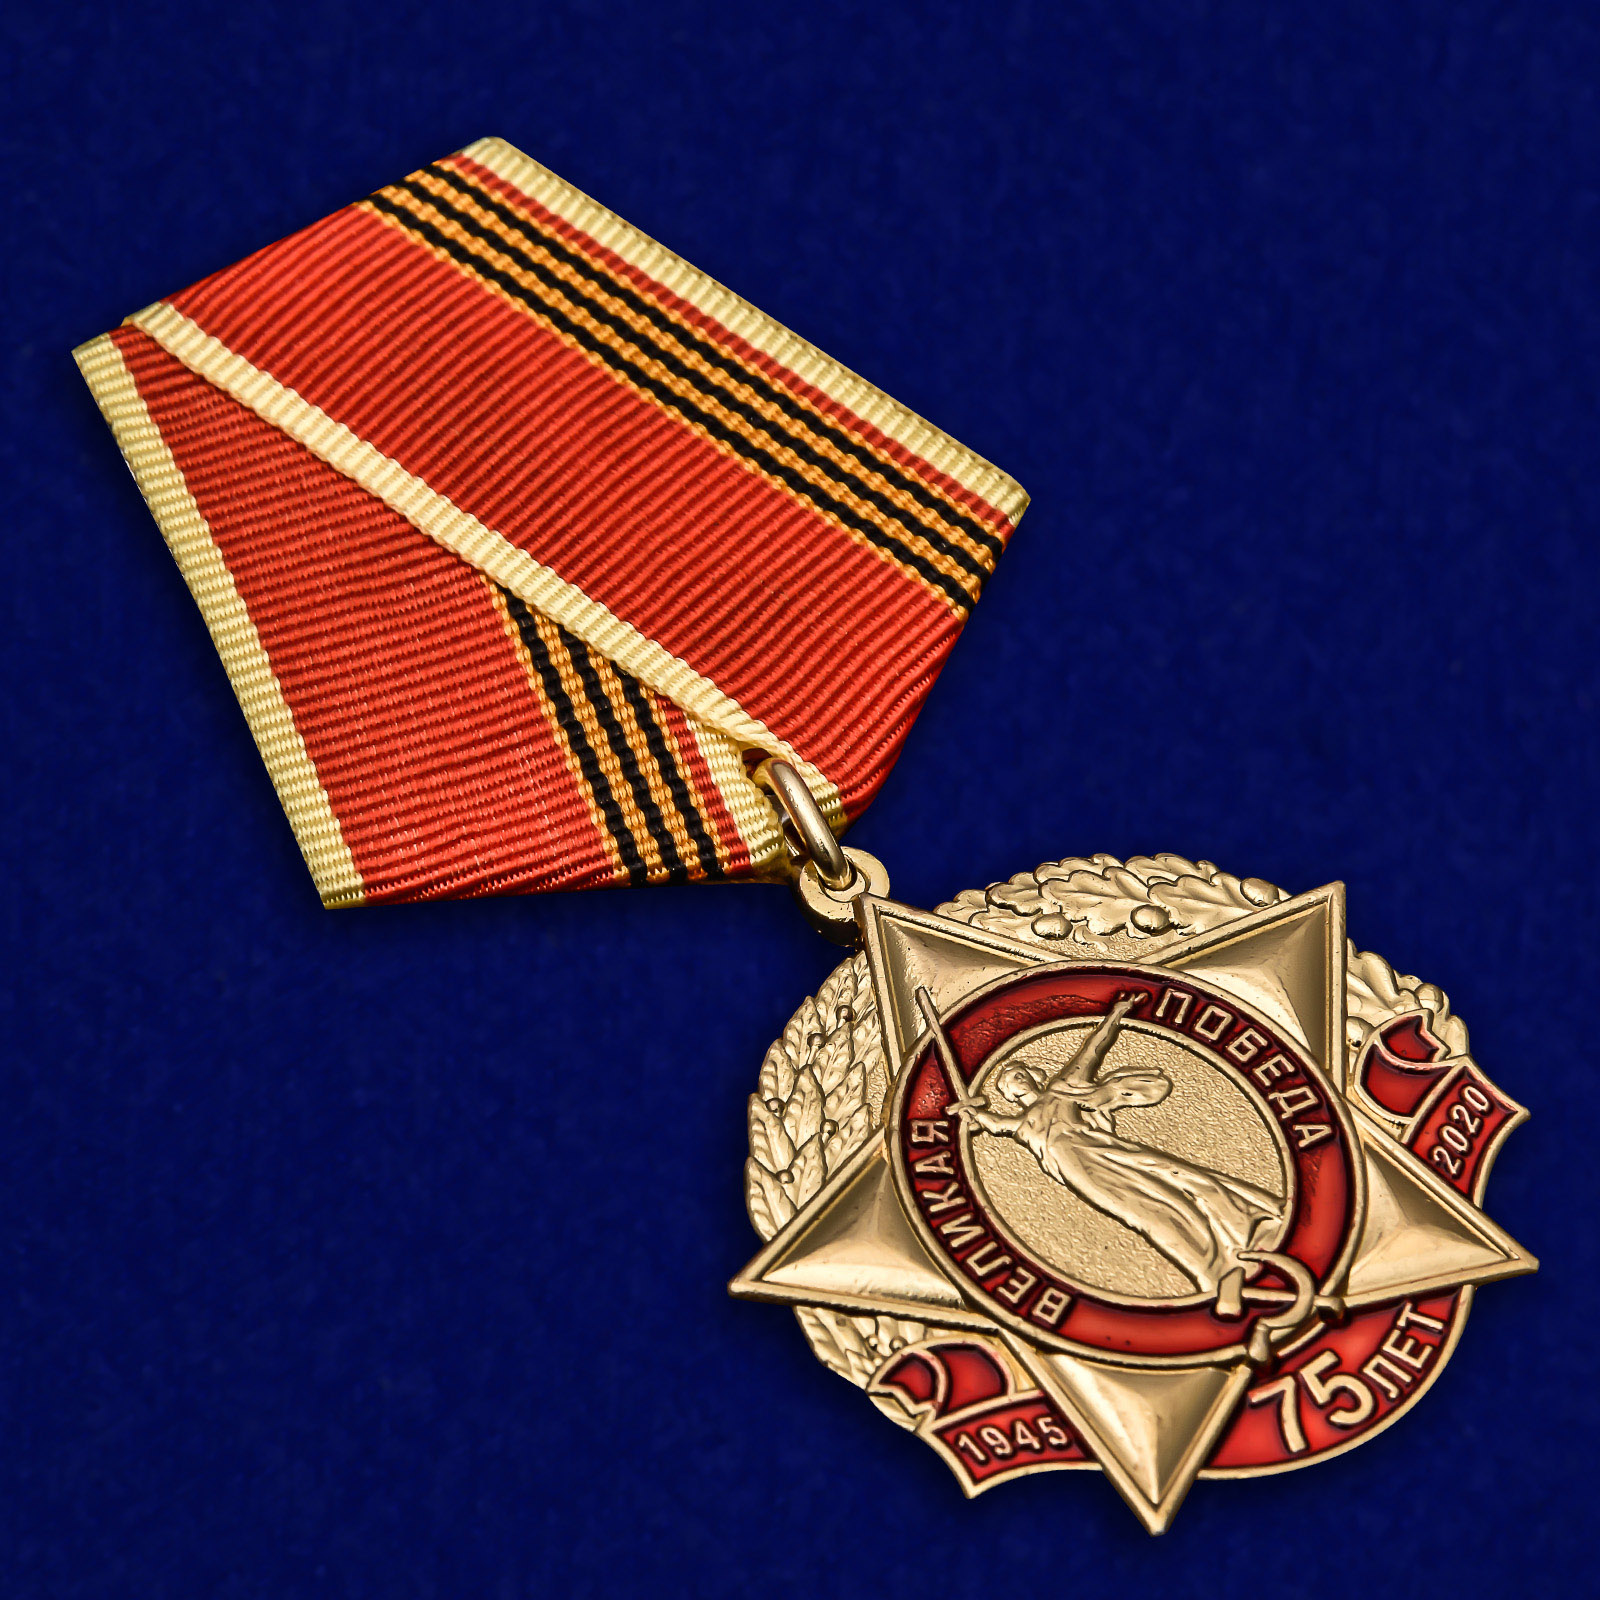 Юбилейная медаль "75 лет Великой Победы" КПРФ 